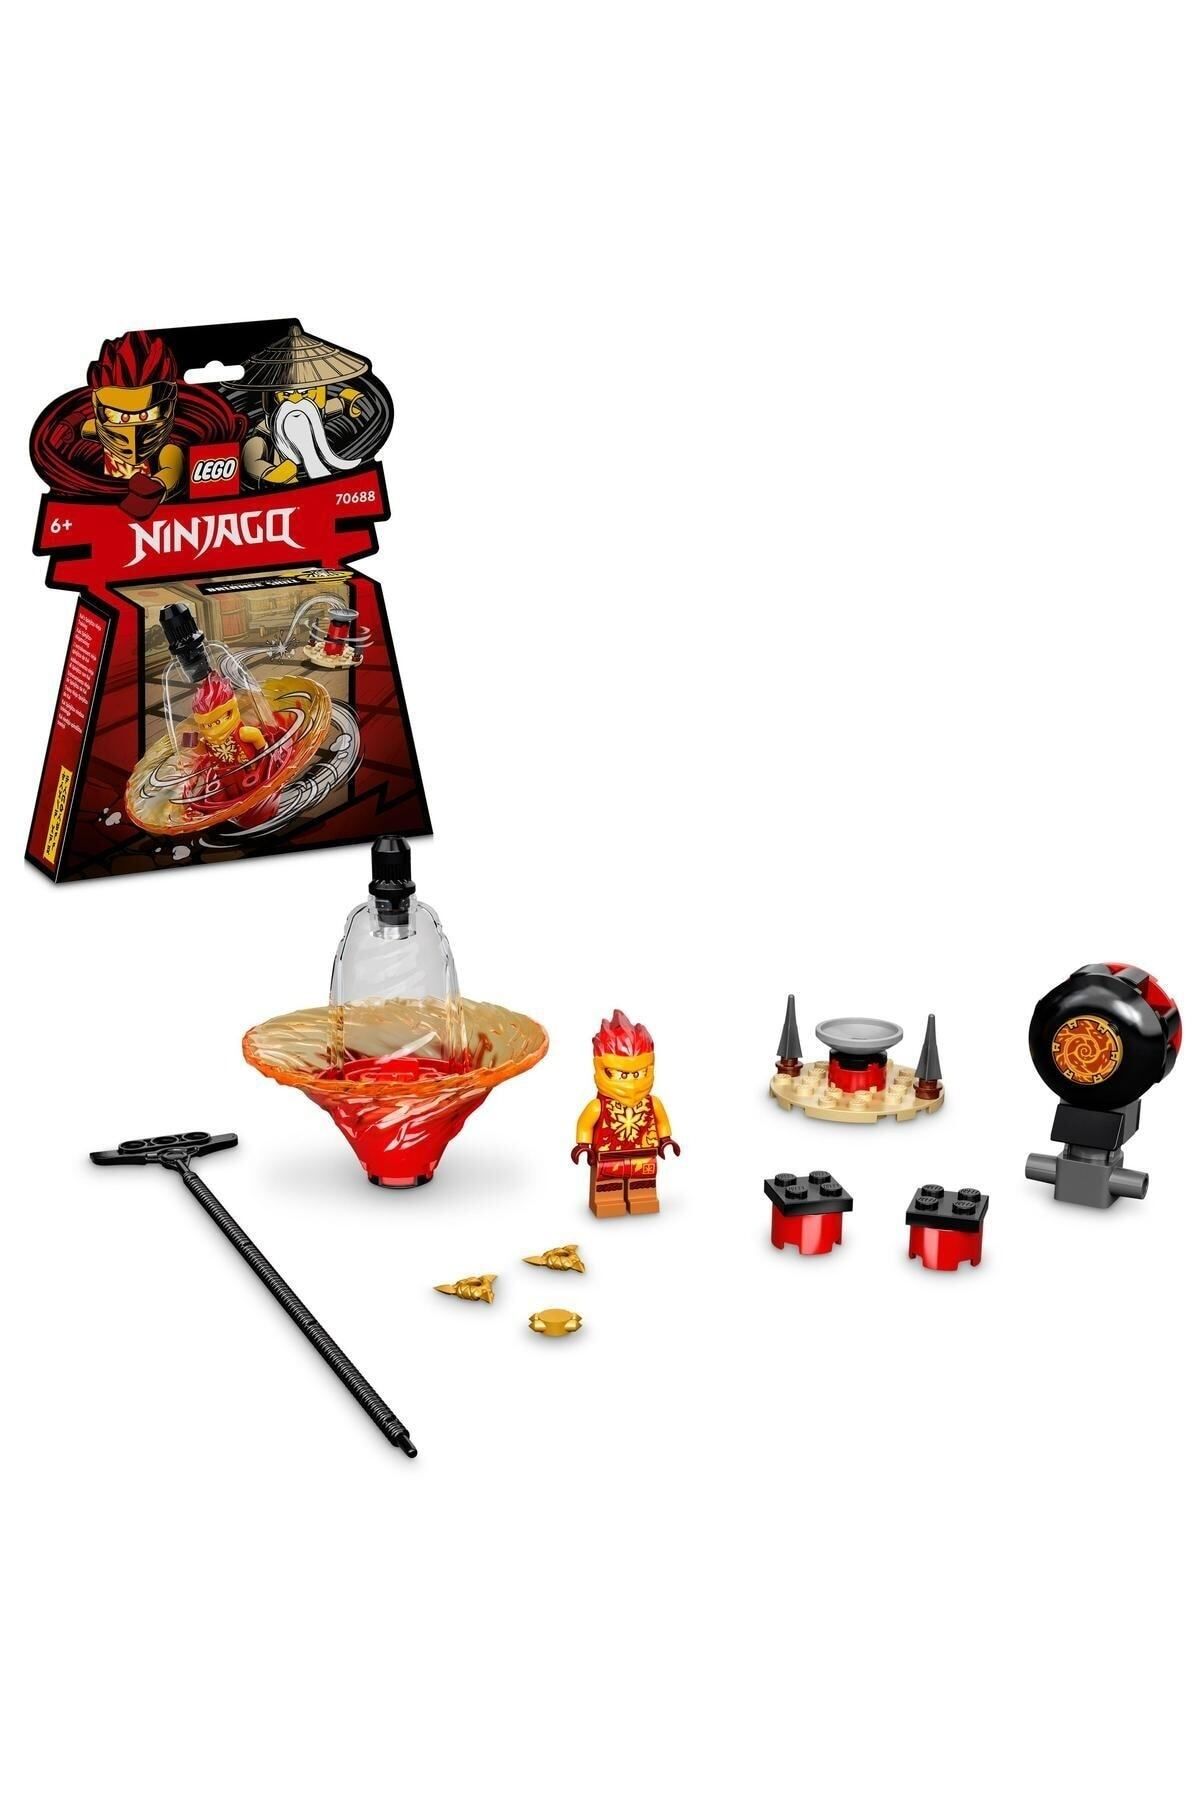 LEGO NINJAGO® Kai'nin Spinjitzu Ninja Eğitimi 70688 - NINJAGO Kai İçeren Topaç Oyuncak Yapım Seti (32 P)